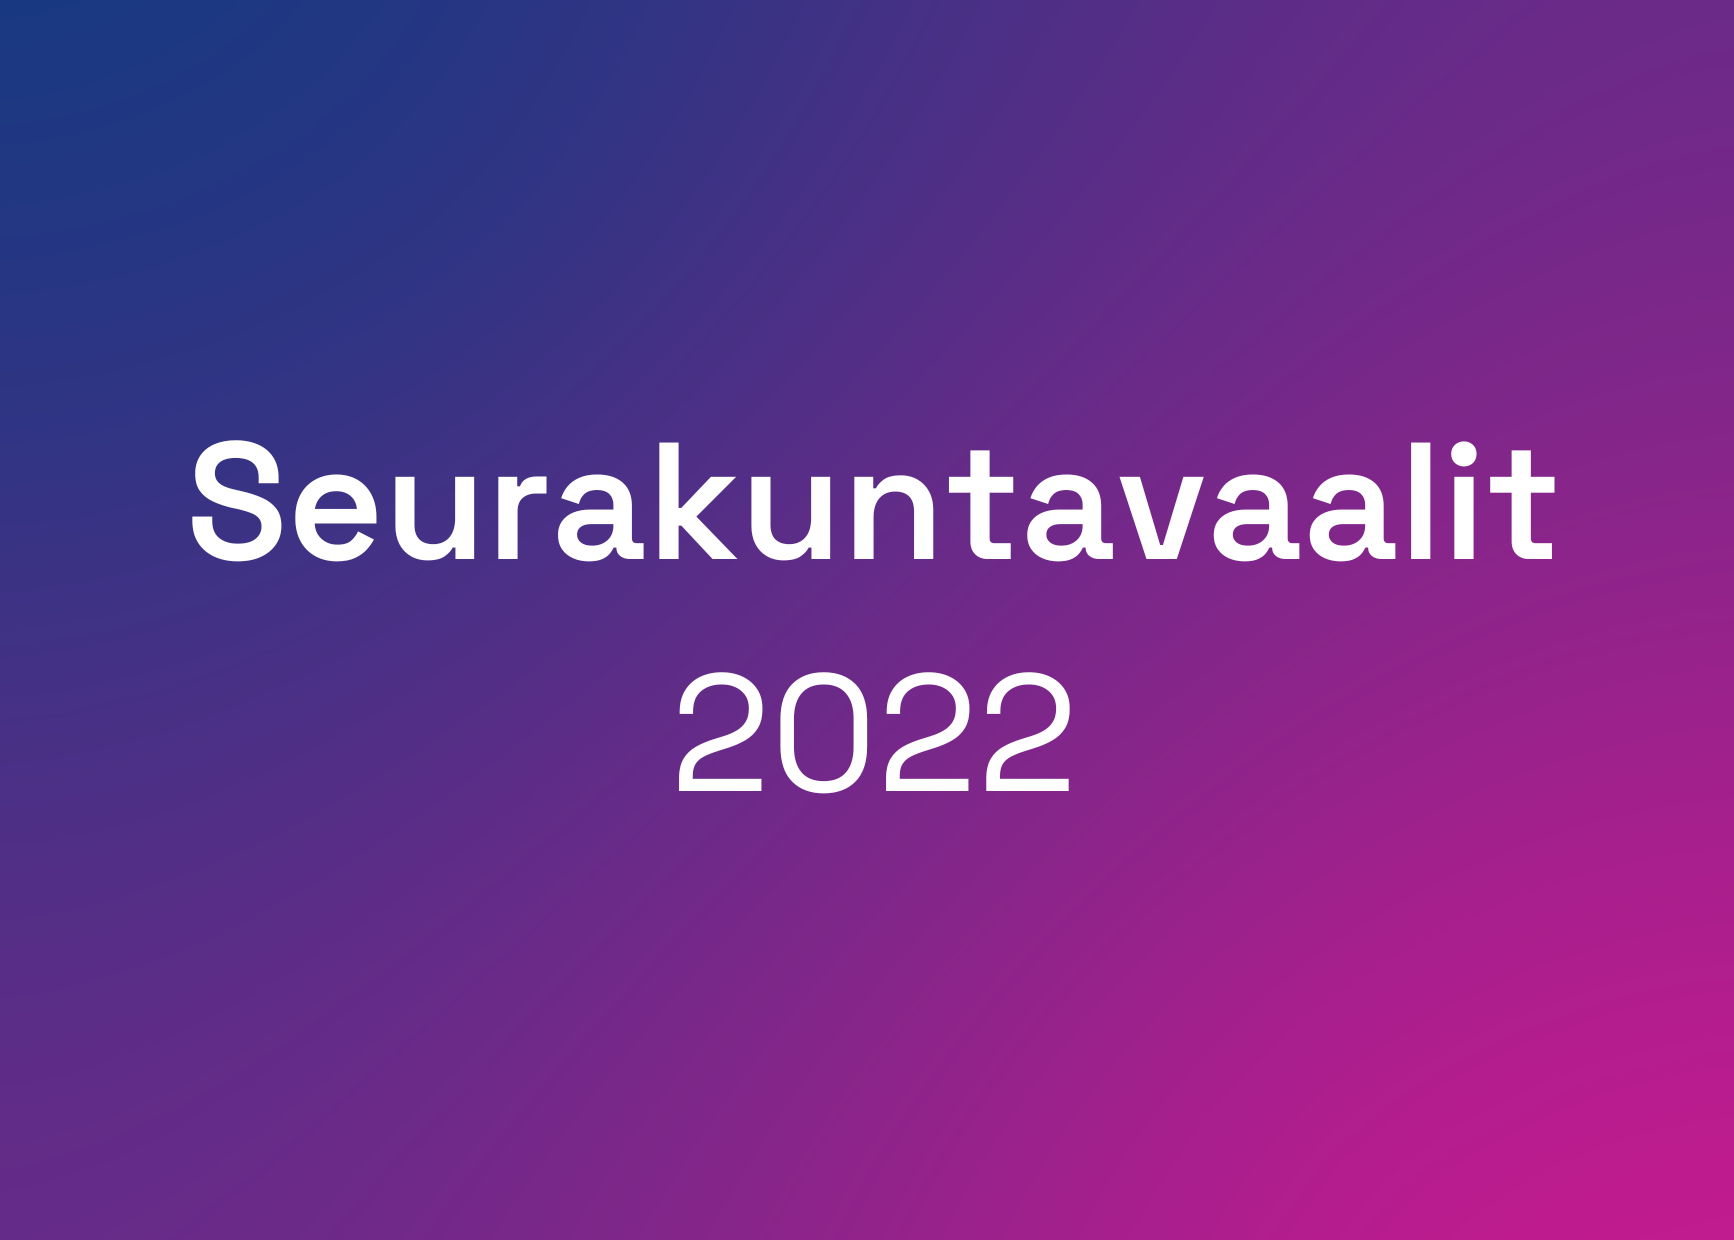 Seurakuntavaalit 2022